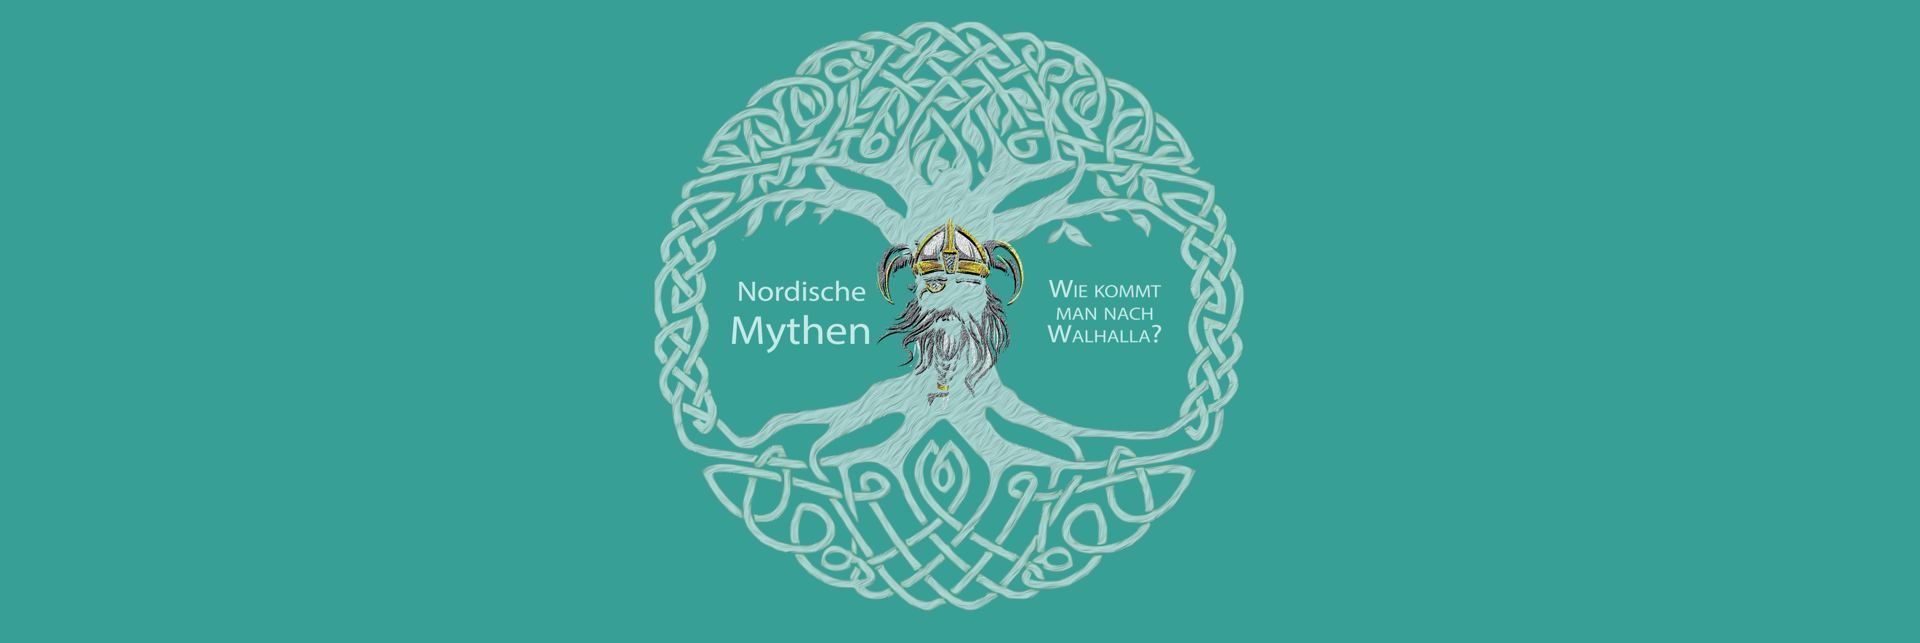 Nordische Mythen